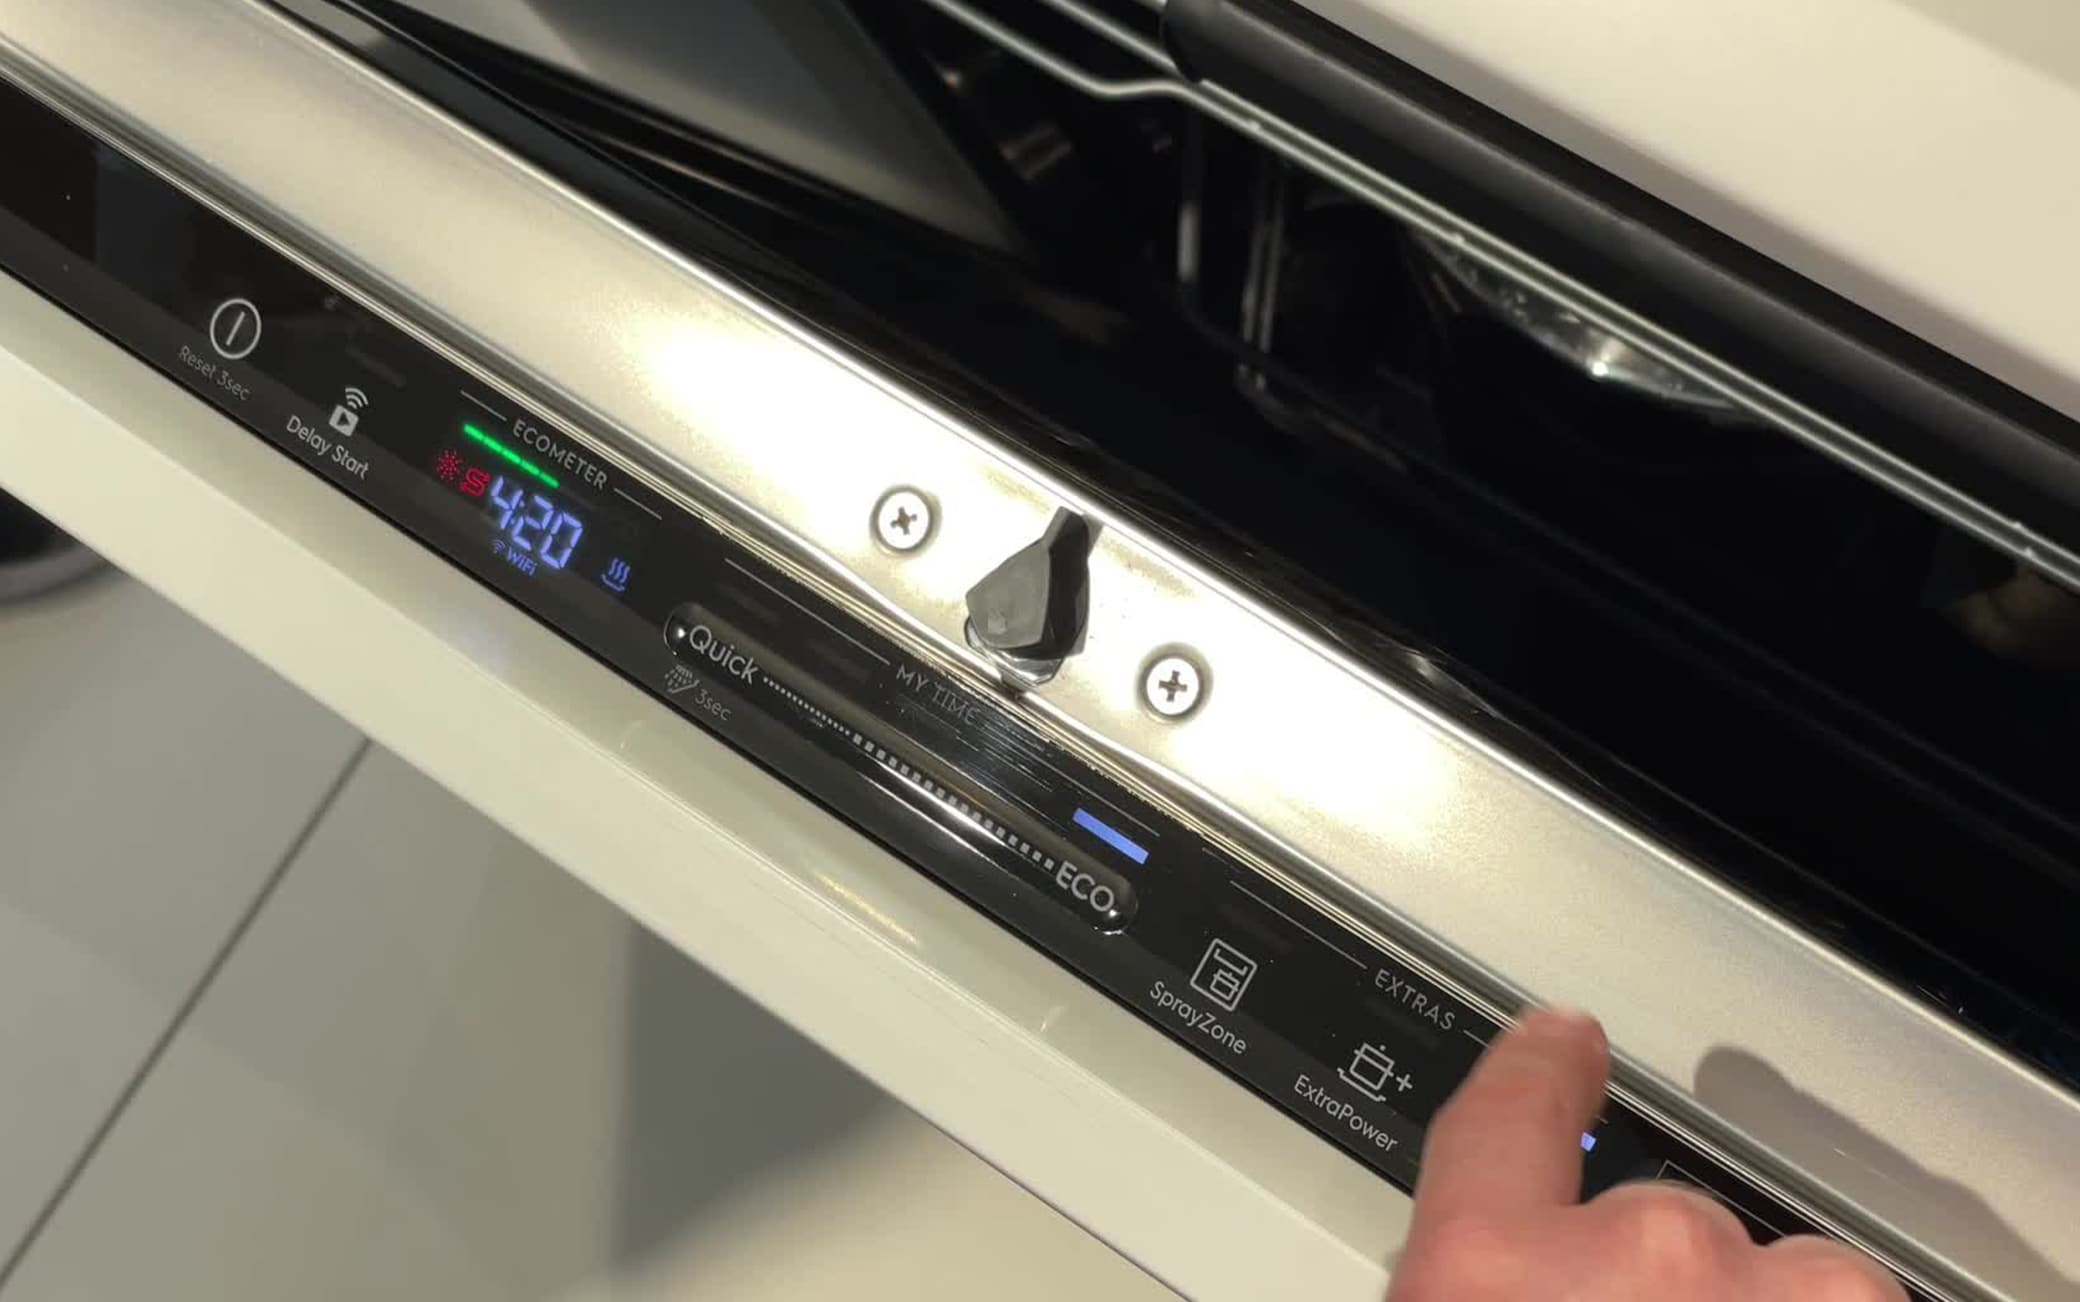 La tecnologia QuickSelect sulle lavastoviglie offre informazioni immediati sui consumi di acqua ed energia